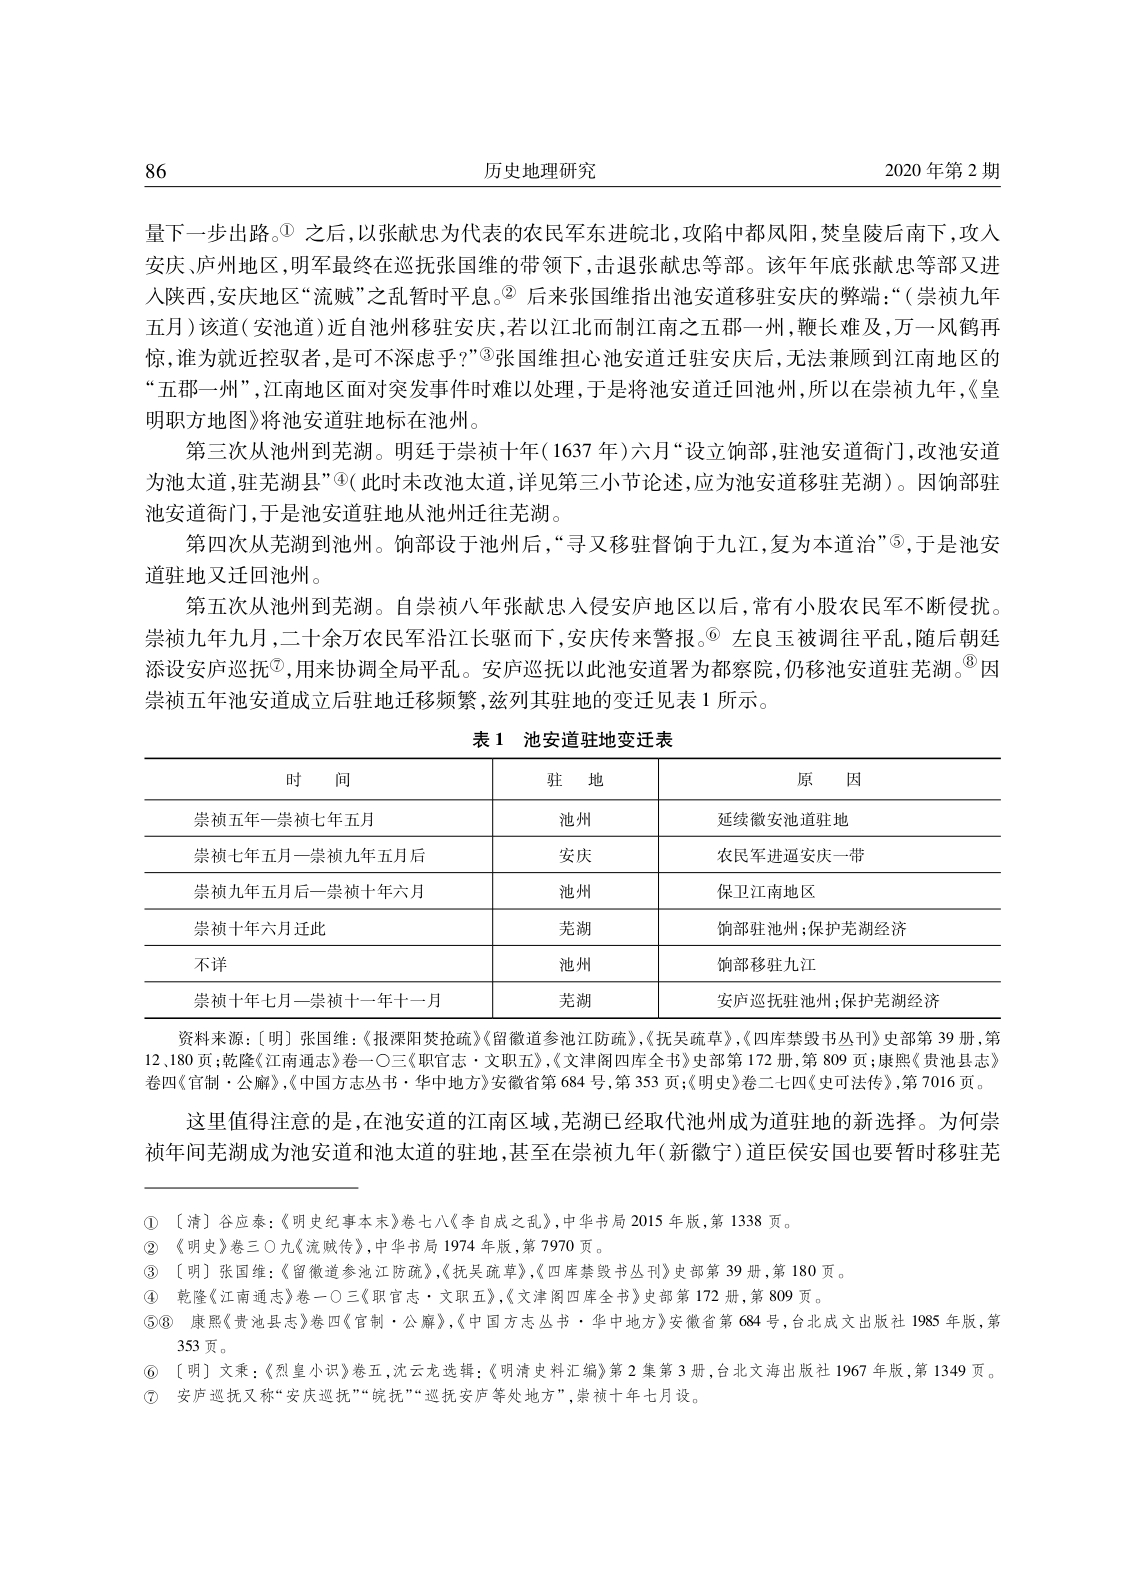 明代安庆、徽州地区兵备道分合演变考论_page-0015.jpg